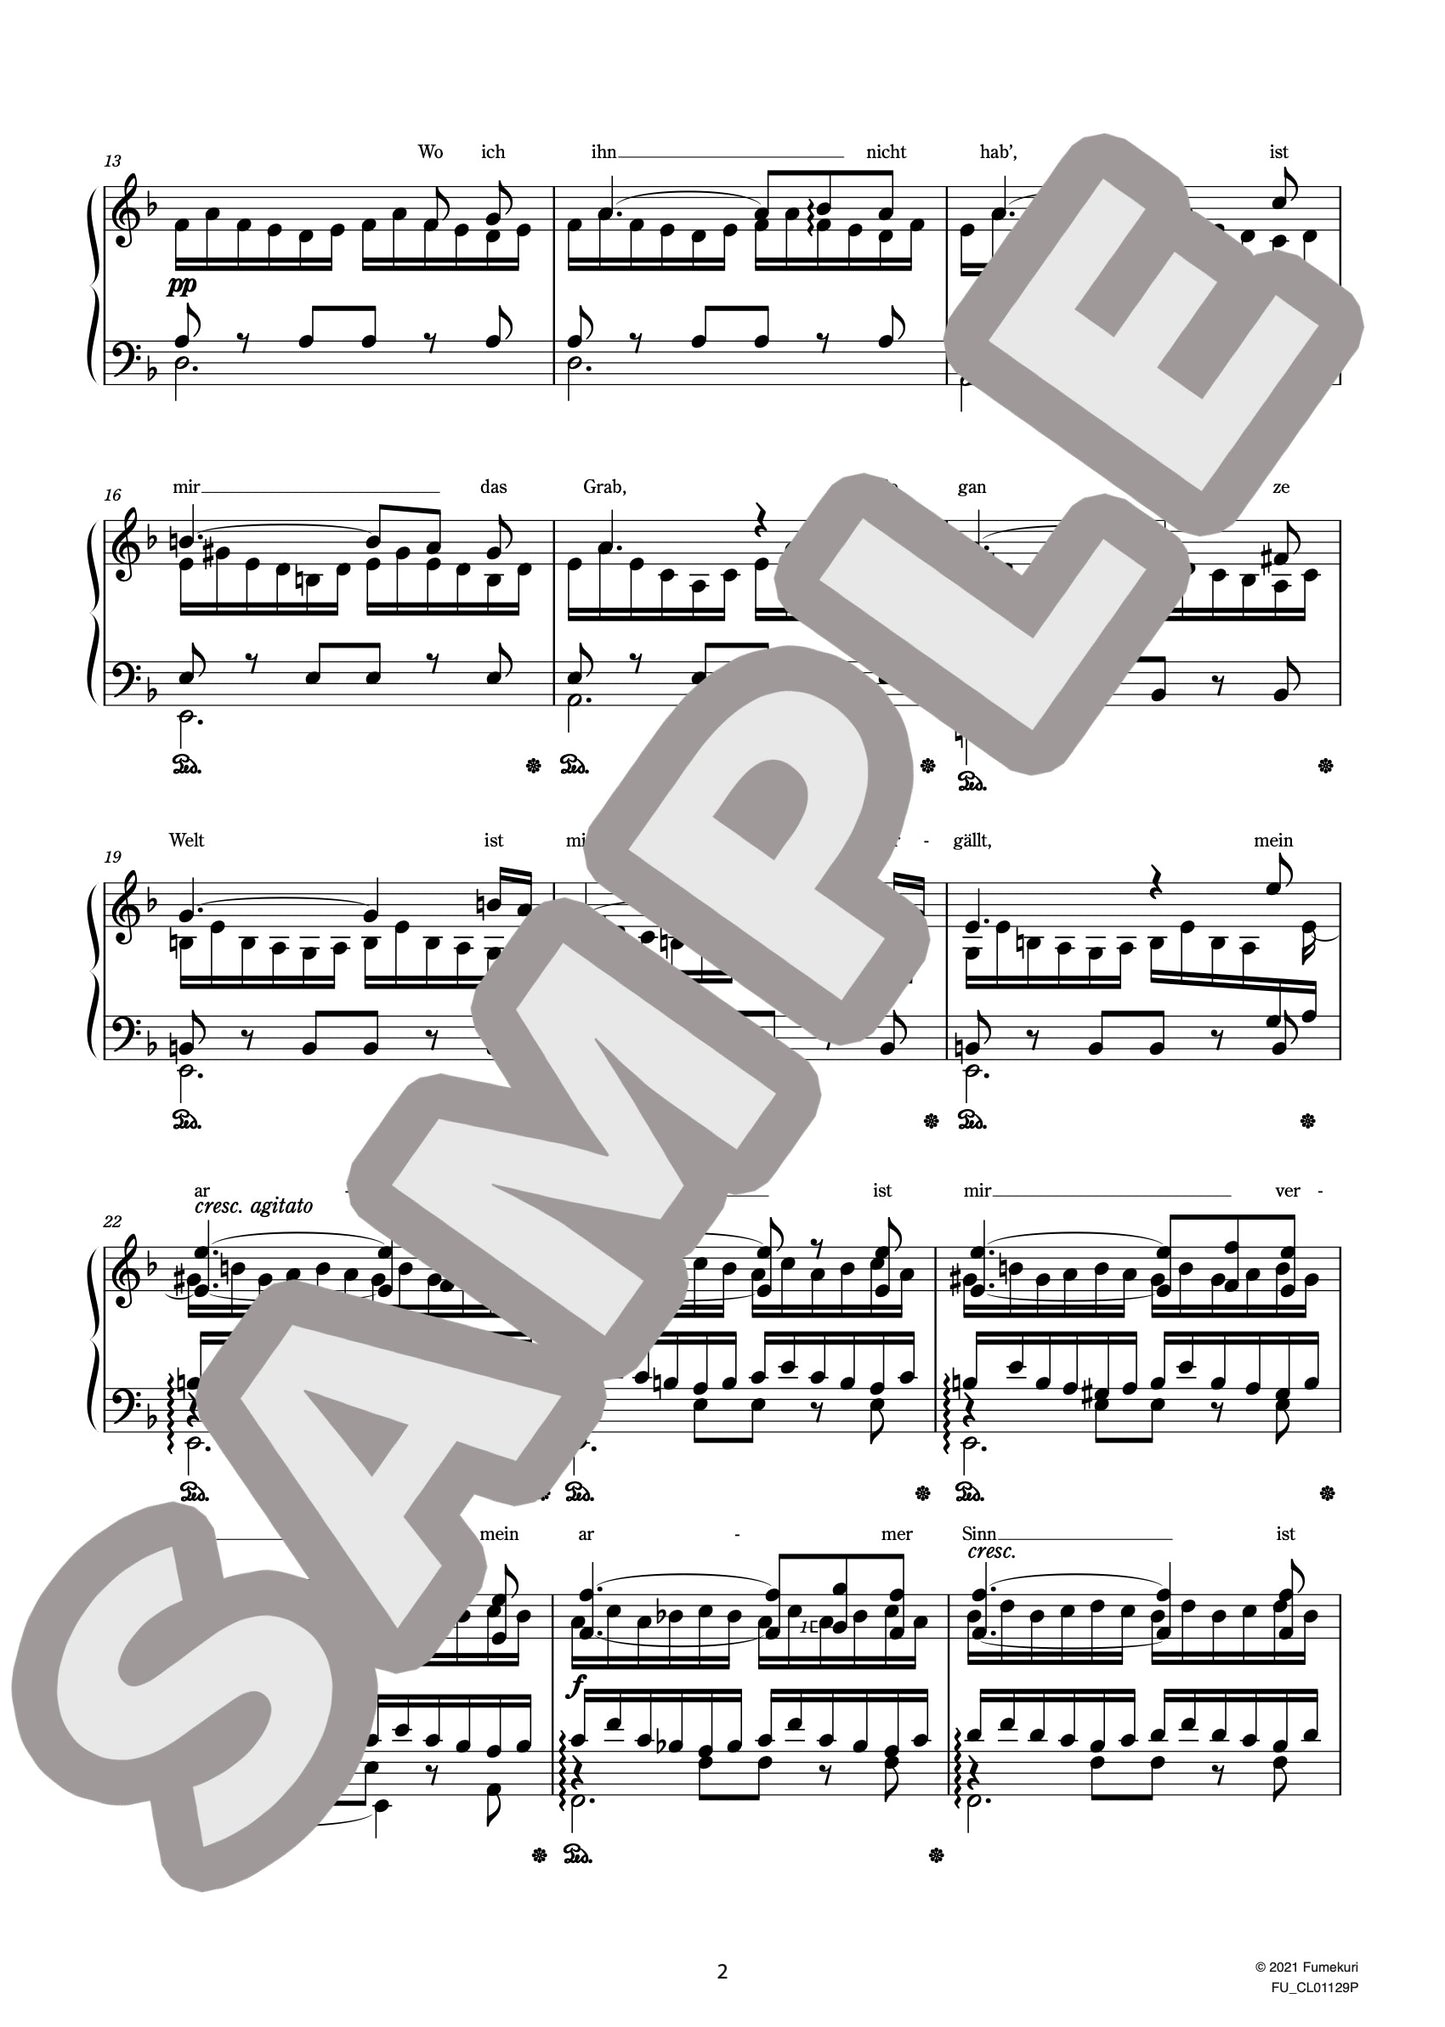 シューベルトによる『12の歌』S.558 第8曲 糸を紡ぐグレートヒェン（SCHUBERT=LISZT) / クラシック・オリジナル楽曲【中上級】